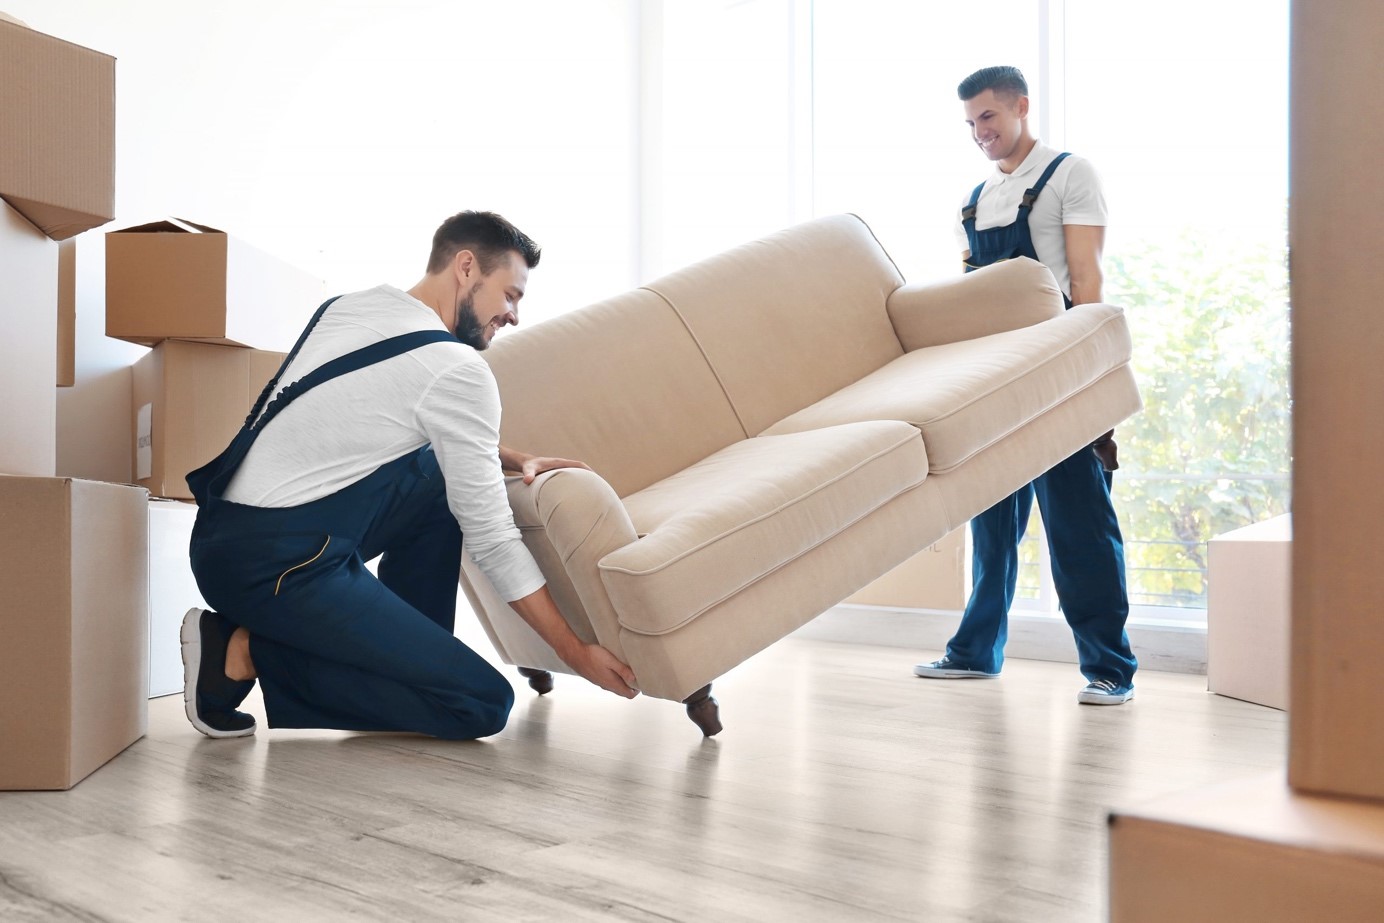 Comment porter des meubles lourds ?